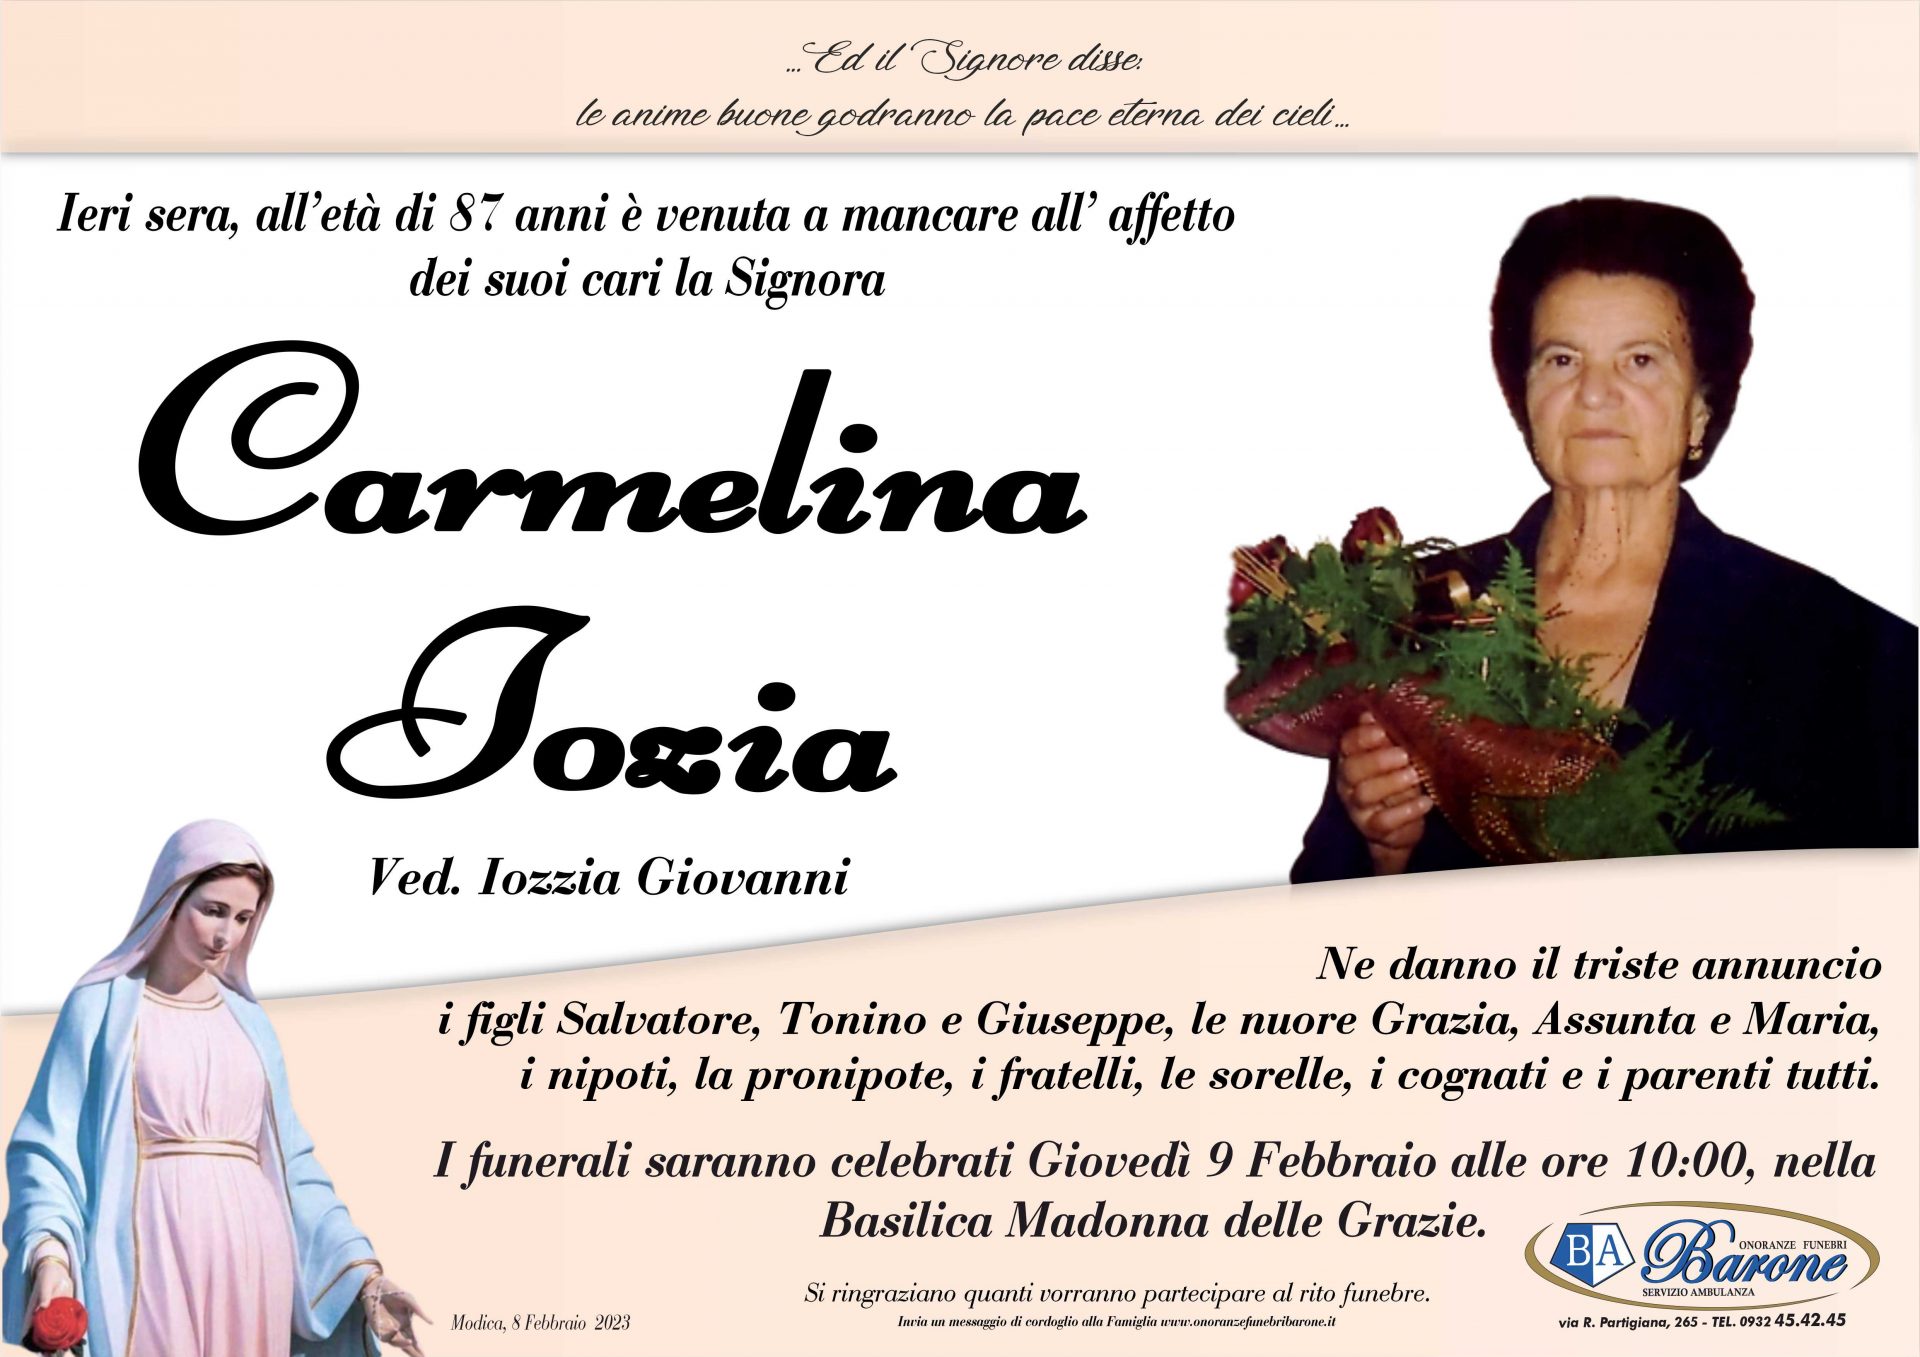 Carmelina Iozia